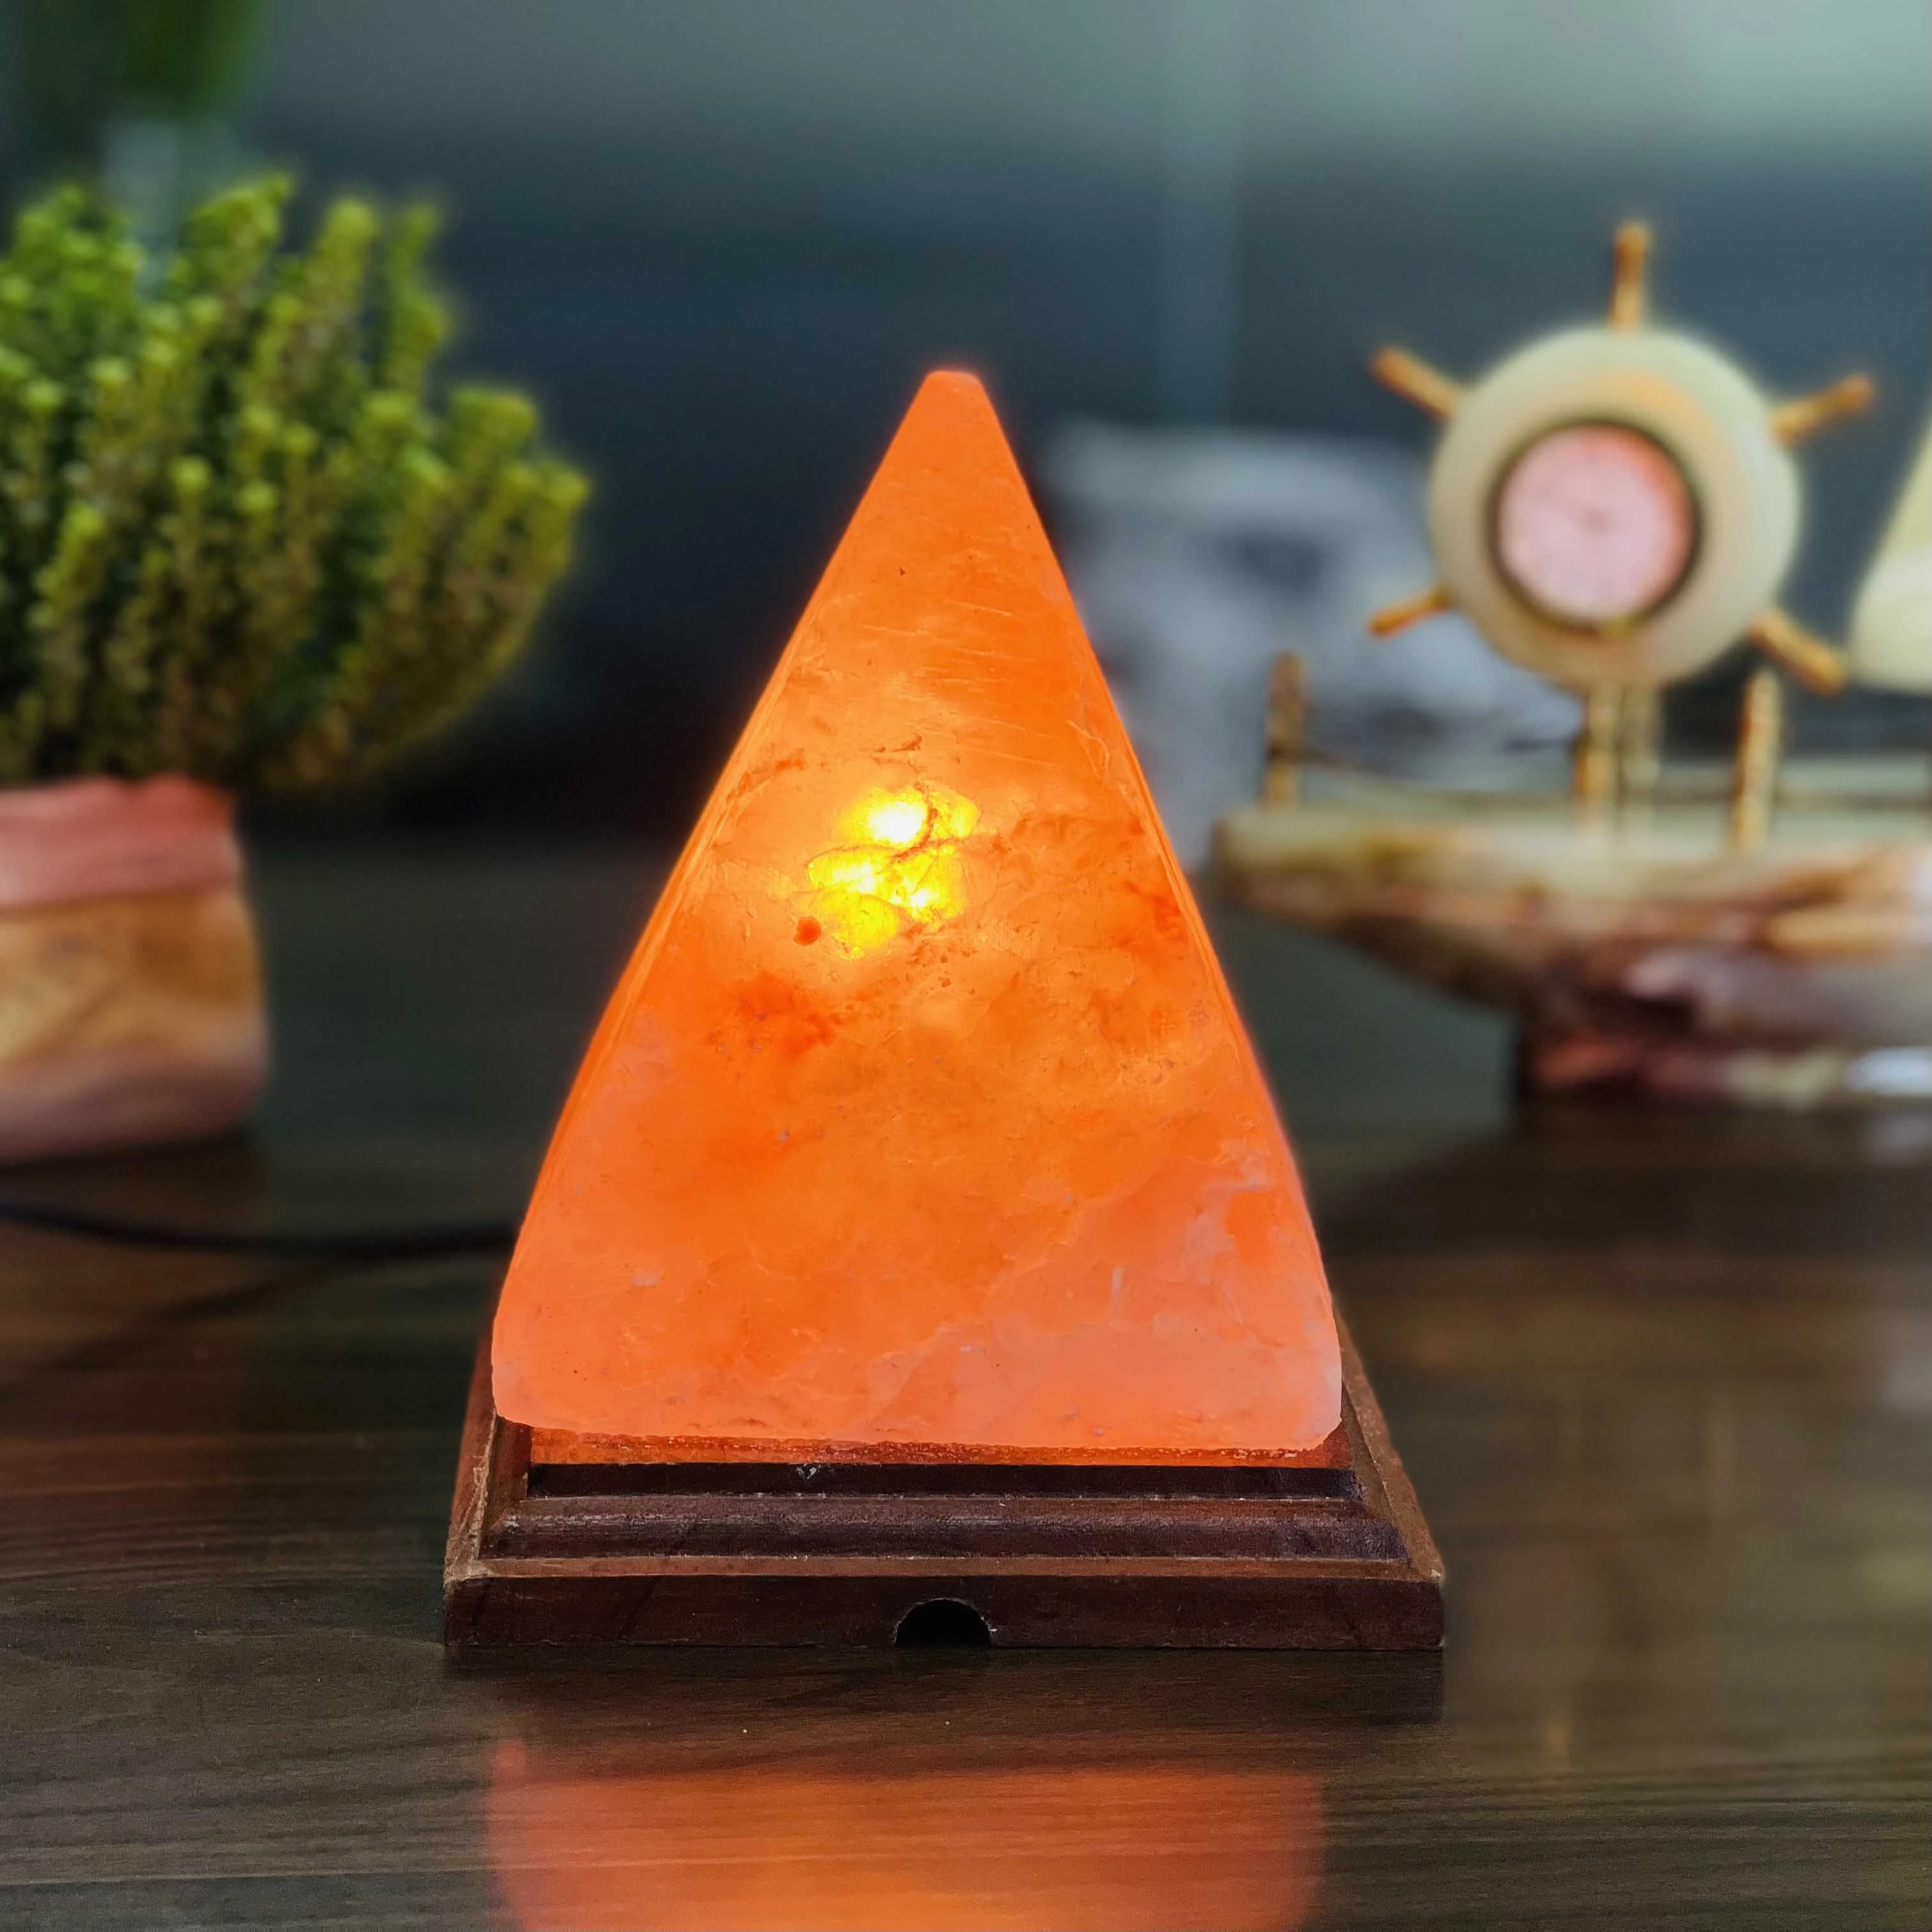 Wholesale  pyramid Shaped Pakistan salt  Himalayan Natural Globe Rock Salt Lamp Study lamp Other home decor night light lamparas